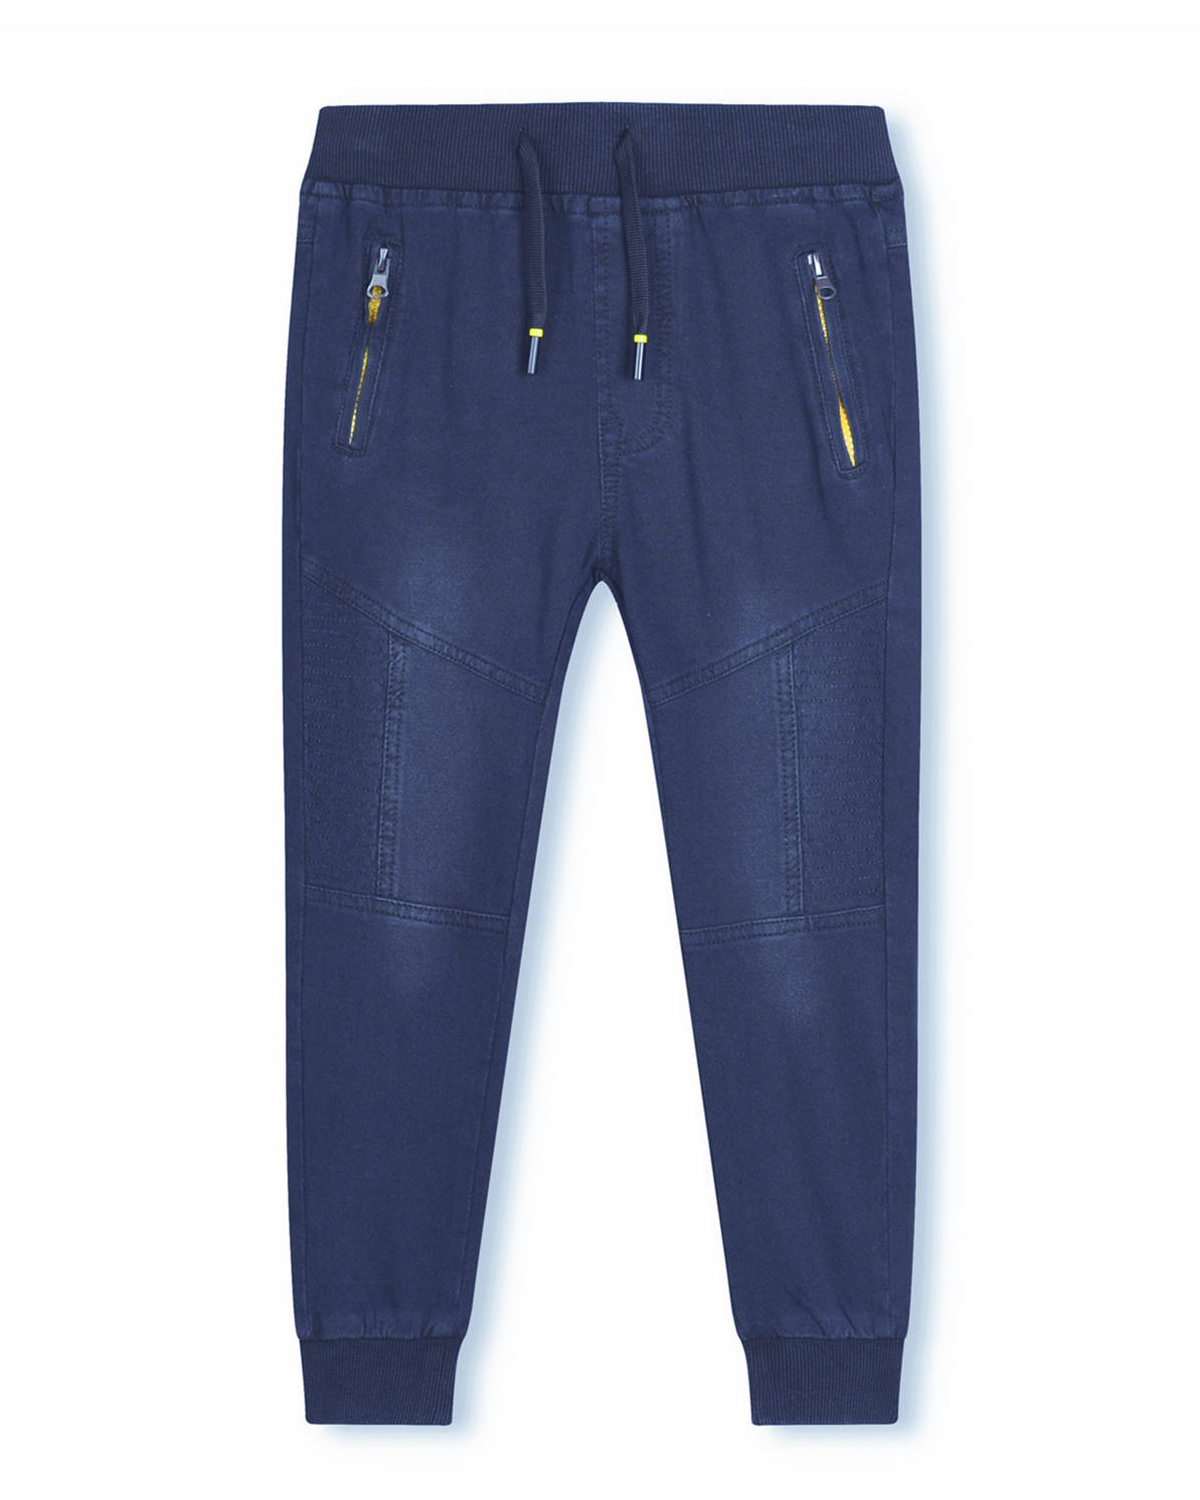 Chlapecké riflové kalhoty / tepláky - KUGO CK0906, modrá / signální zipy Barva: Modrá, Velikost: 140